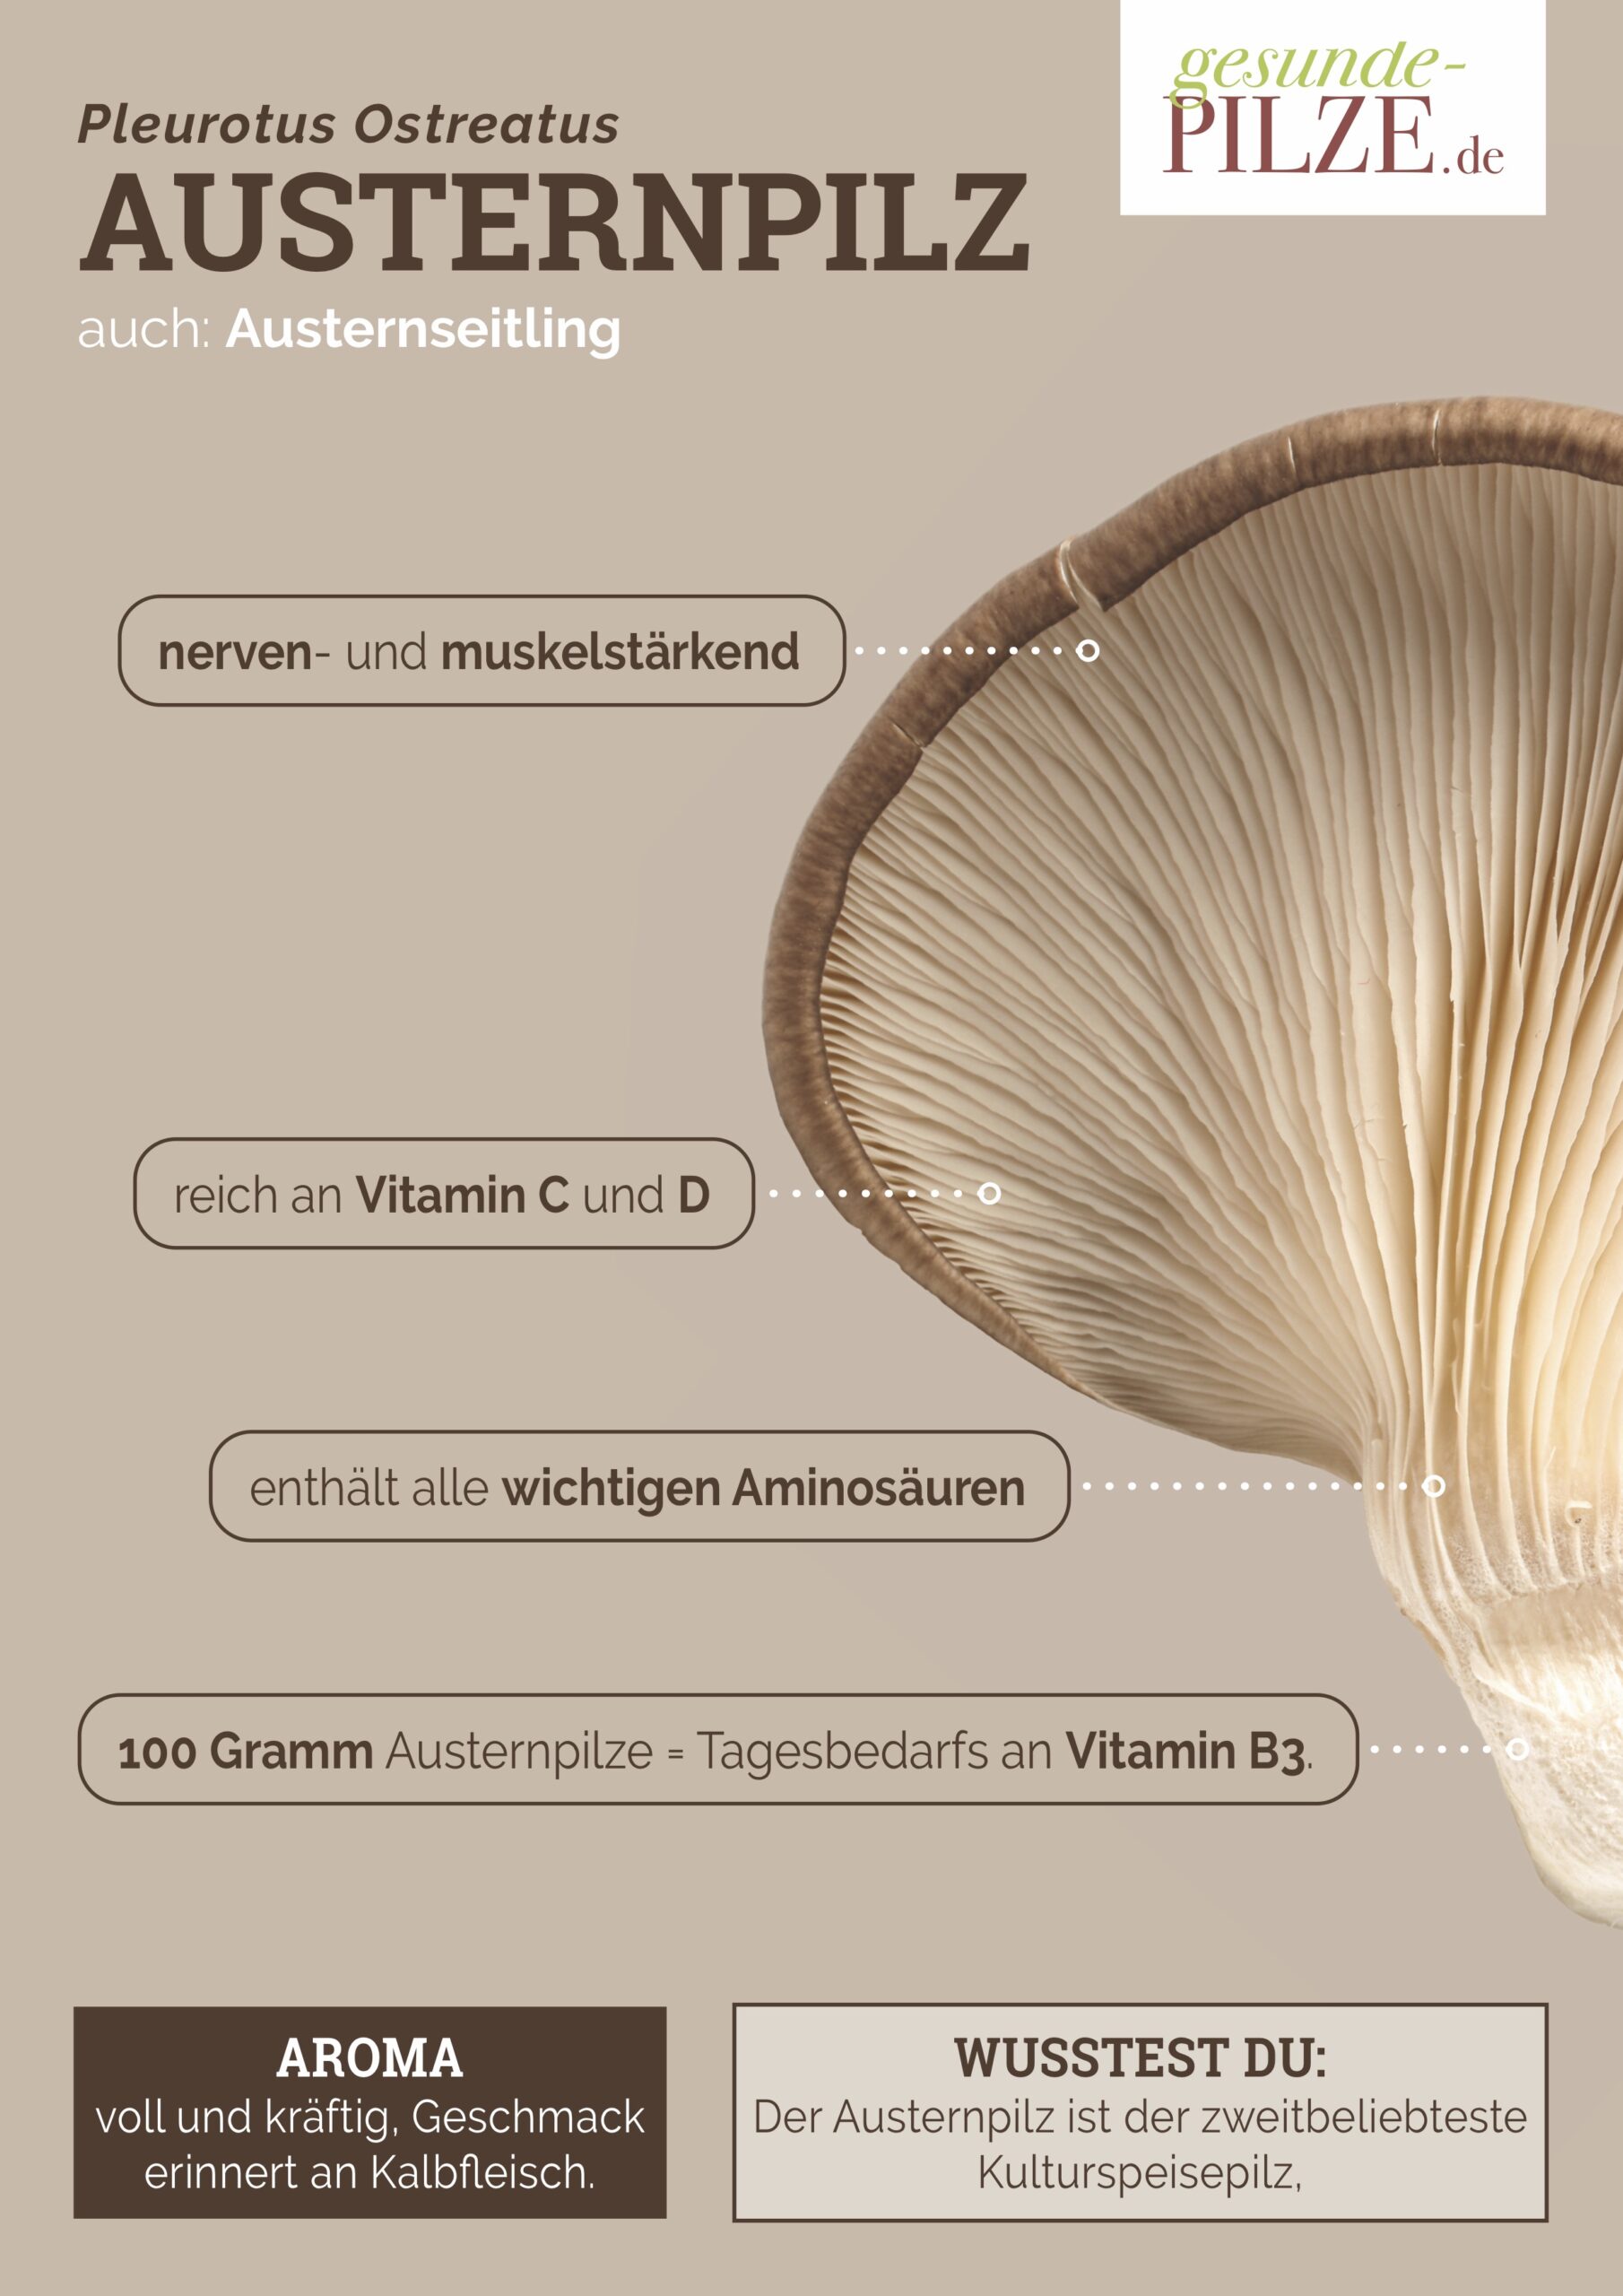 //www.gesunde-pilze.de/wp-content/uploads/2020/10/Poster_Austernpilz_hoch-scaled.jpg